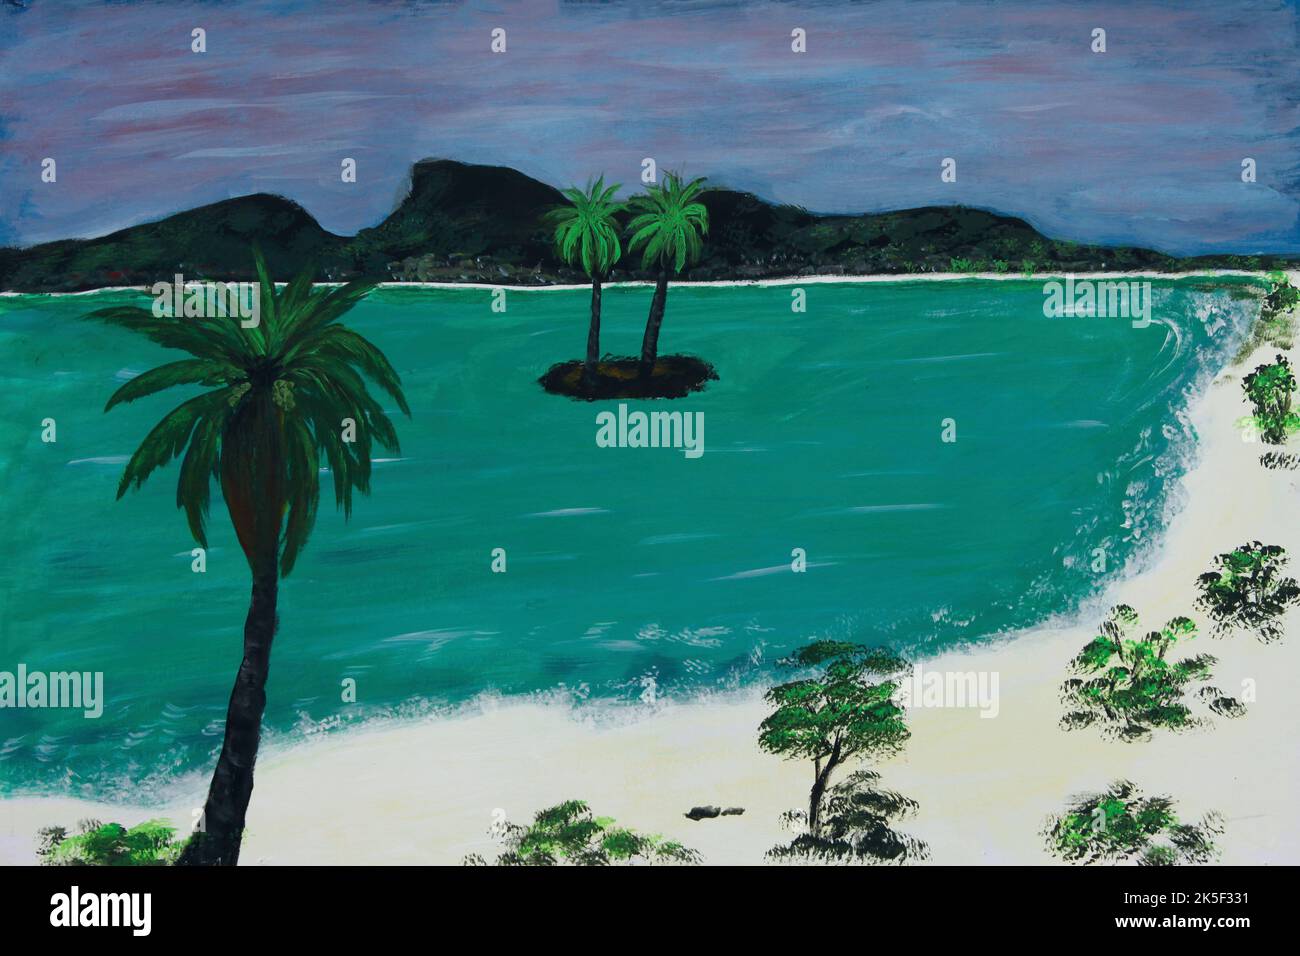 Peinture à l'huile des îles de plage tropicales de sable avec l'eau de mer verte Banque D'Images